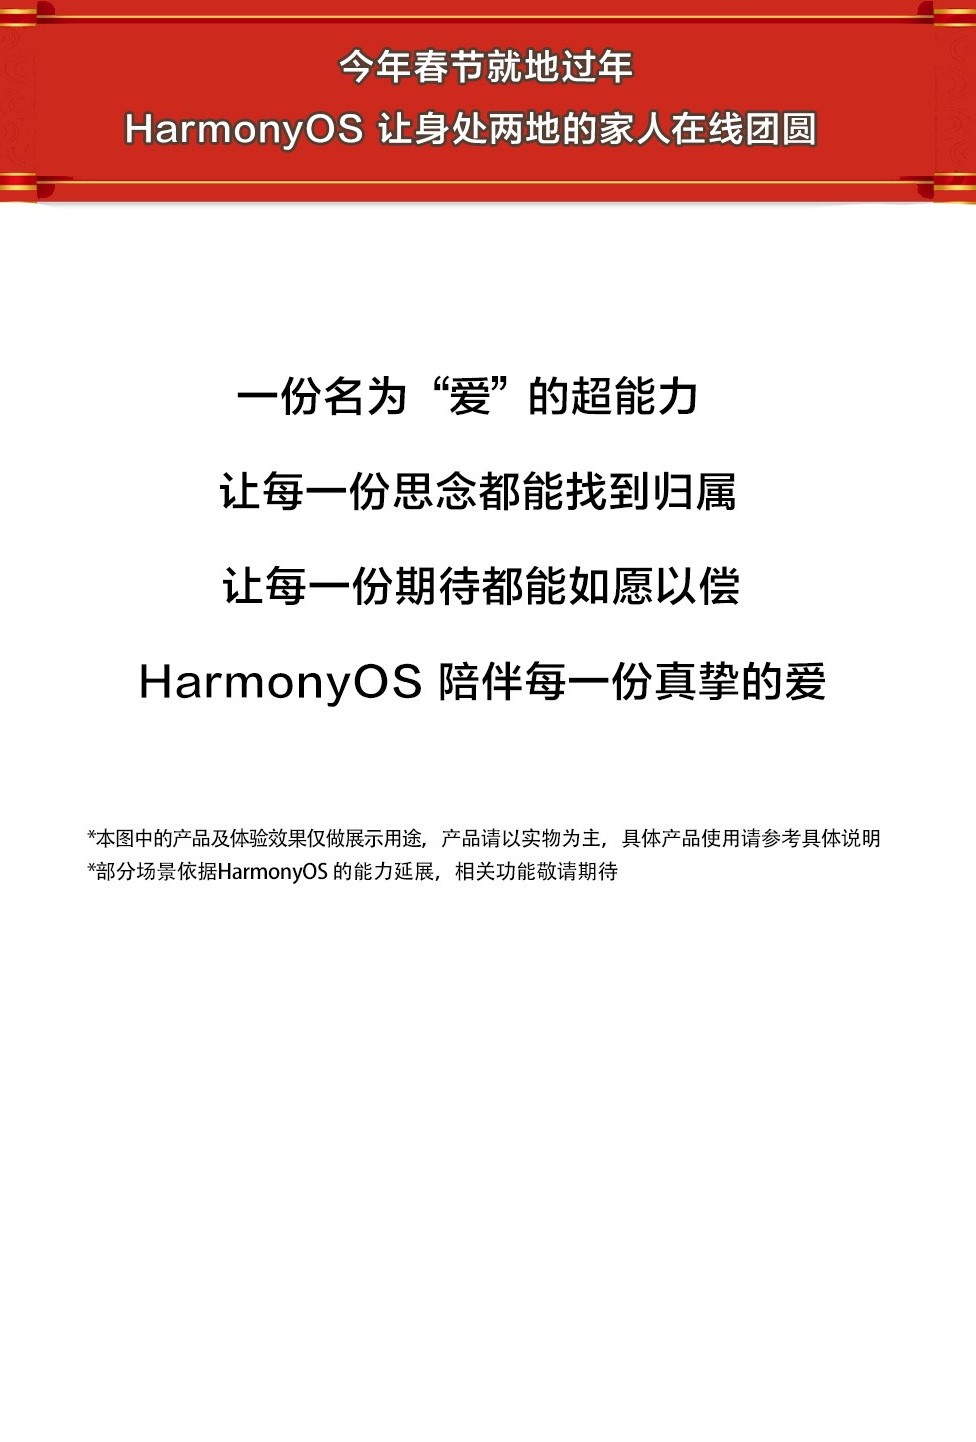 今年春节 HarmonyOS 陪伴每一份真挚的爱-开源基础软件社区